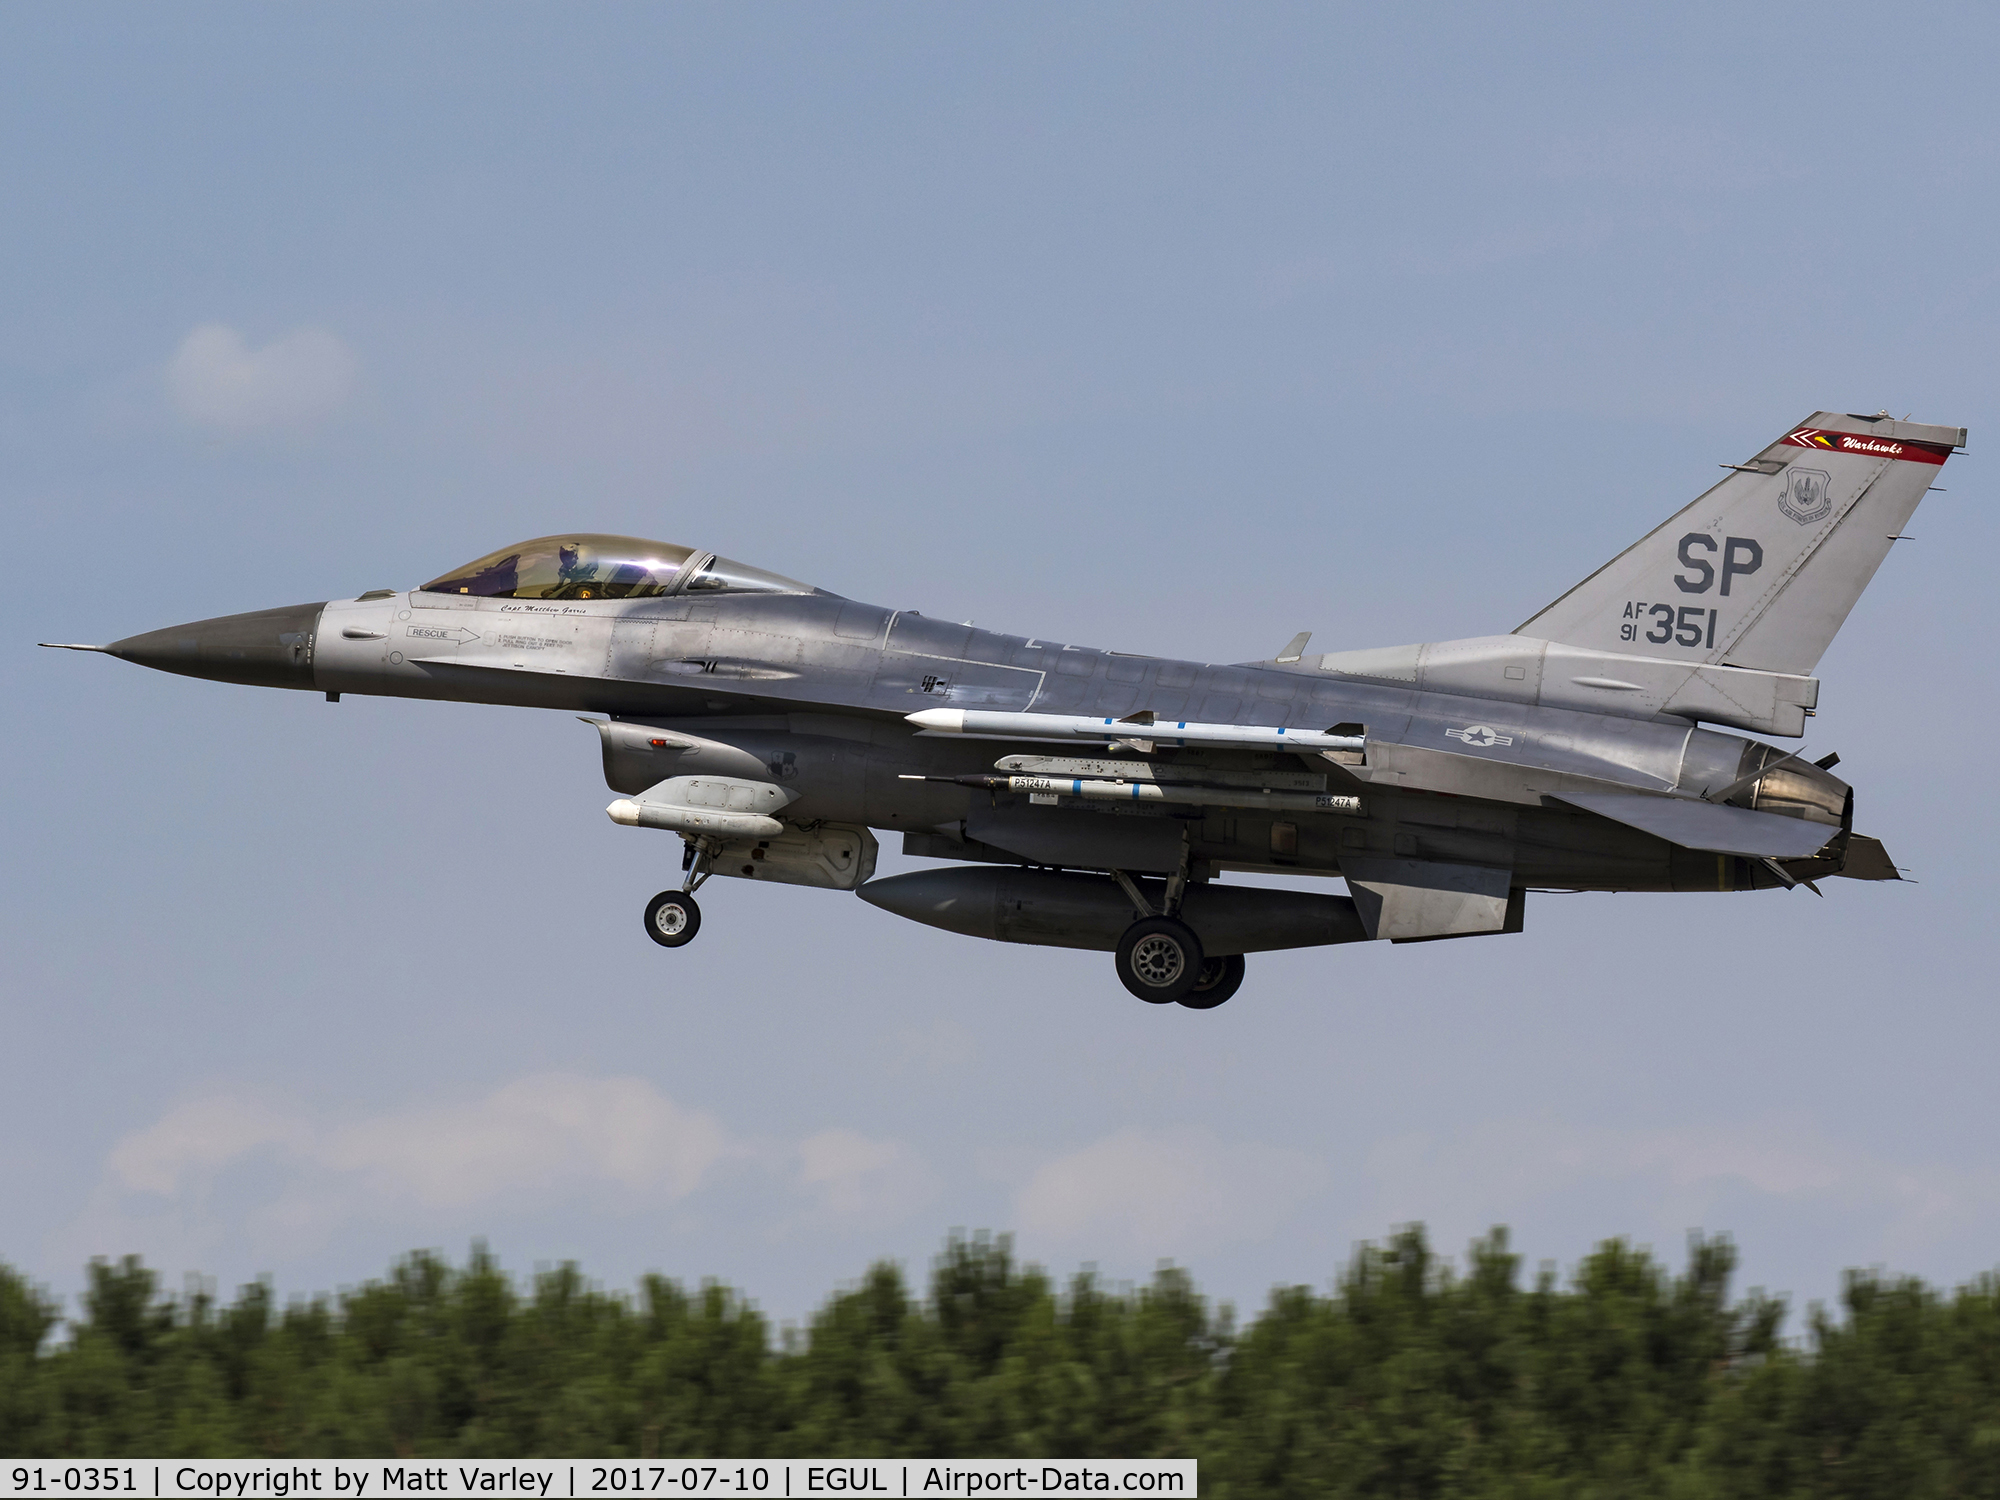 91-0351, 1991 General Dynamics F-16C Fighting Falcon C/N CC-49, Landing on RWY 24